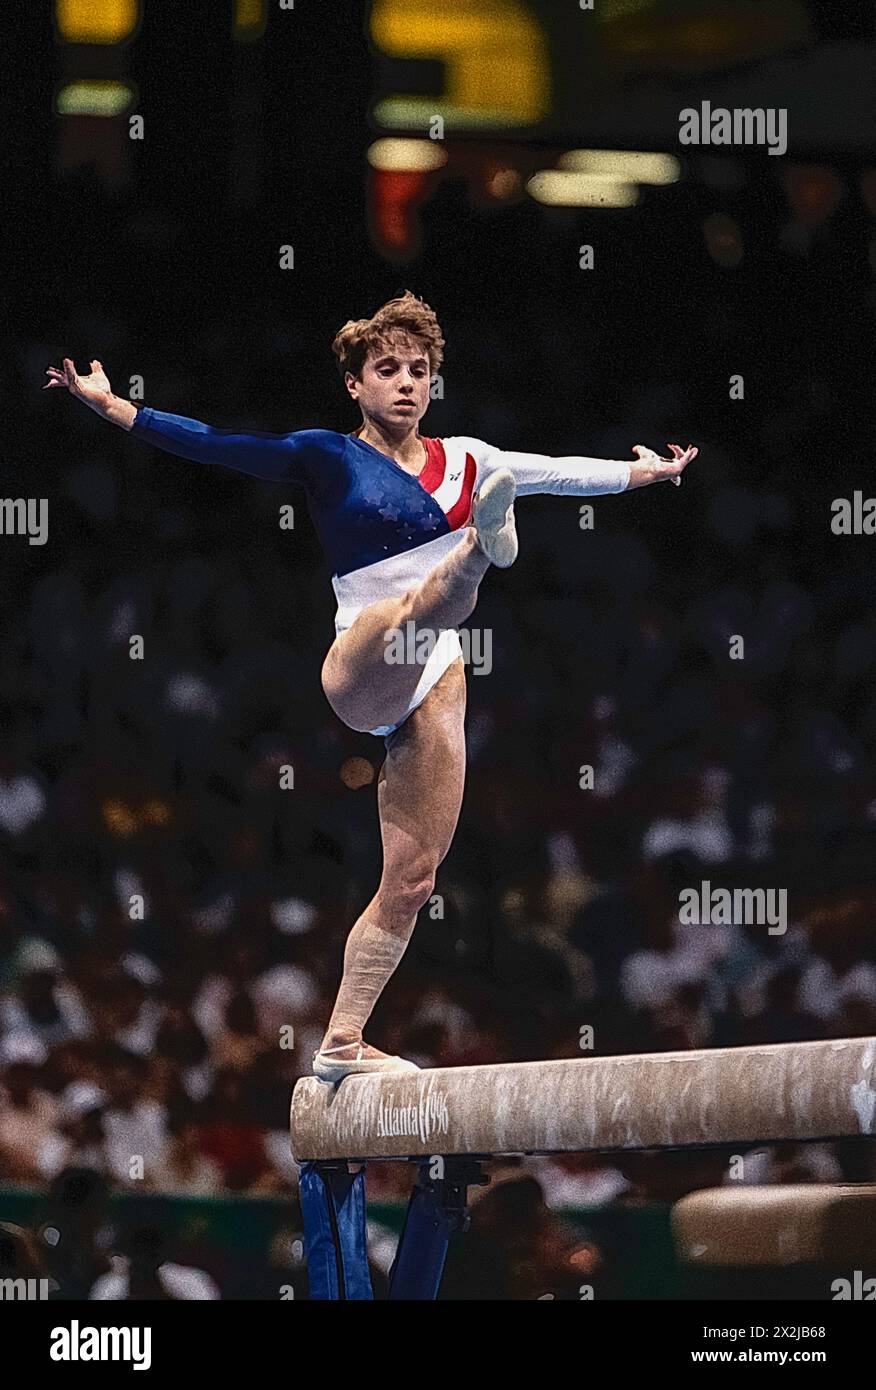 Kerri Strug (États-Unis) en compétition sur la poutre d'équilibre dans la finale de l'équipe féminine de gymnastique artistique aux Jeux olympiques d'été de 1996. Banque D'Images